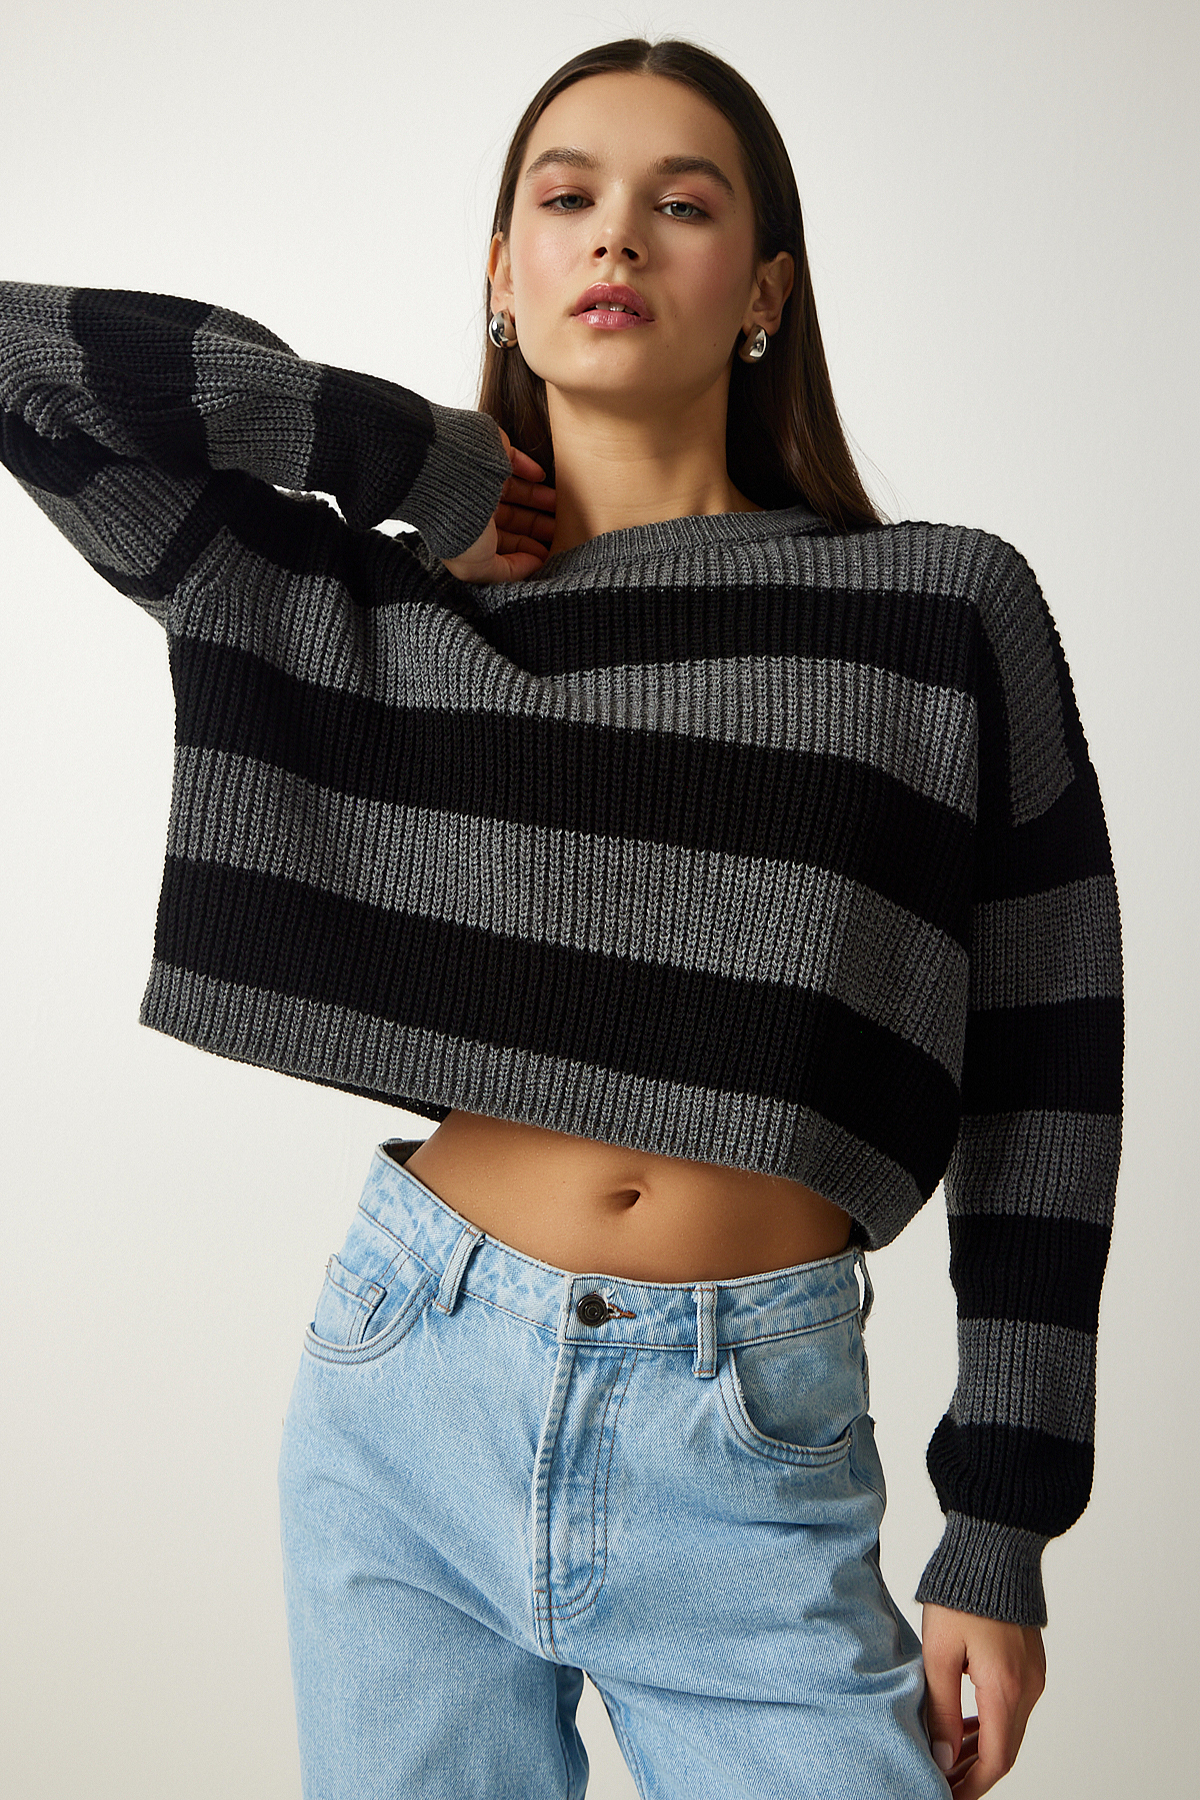 Levně Happiness İstanbul Women's Gray Black Striped Crop Knitwear Sweater